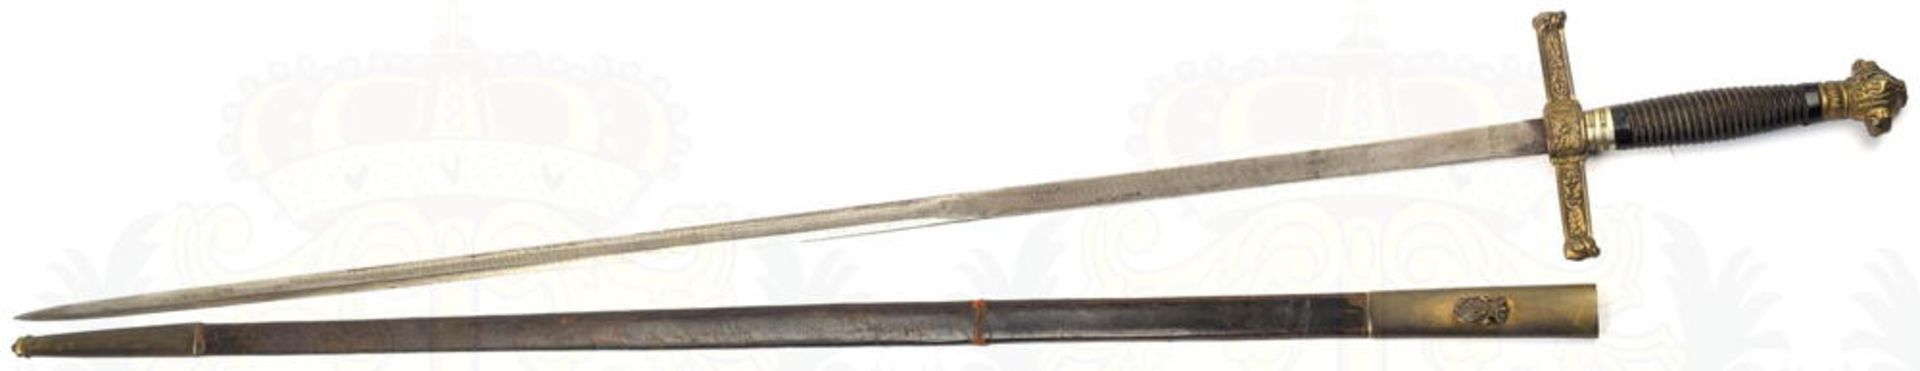 DEGEN, blanke zweischneidige Klinge m. 24cm langer Fehlschärfe, eingeschlagene Bez. „Toledo“, L. 75c